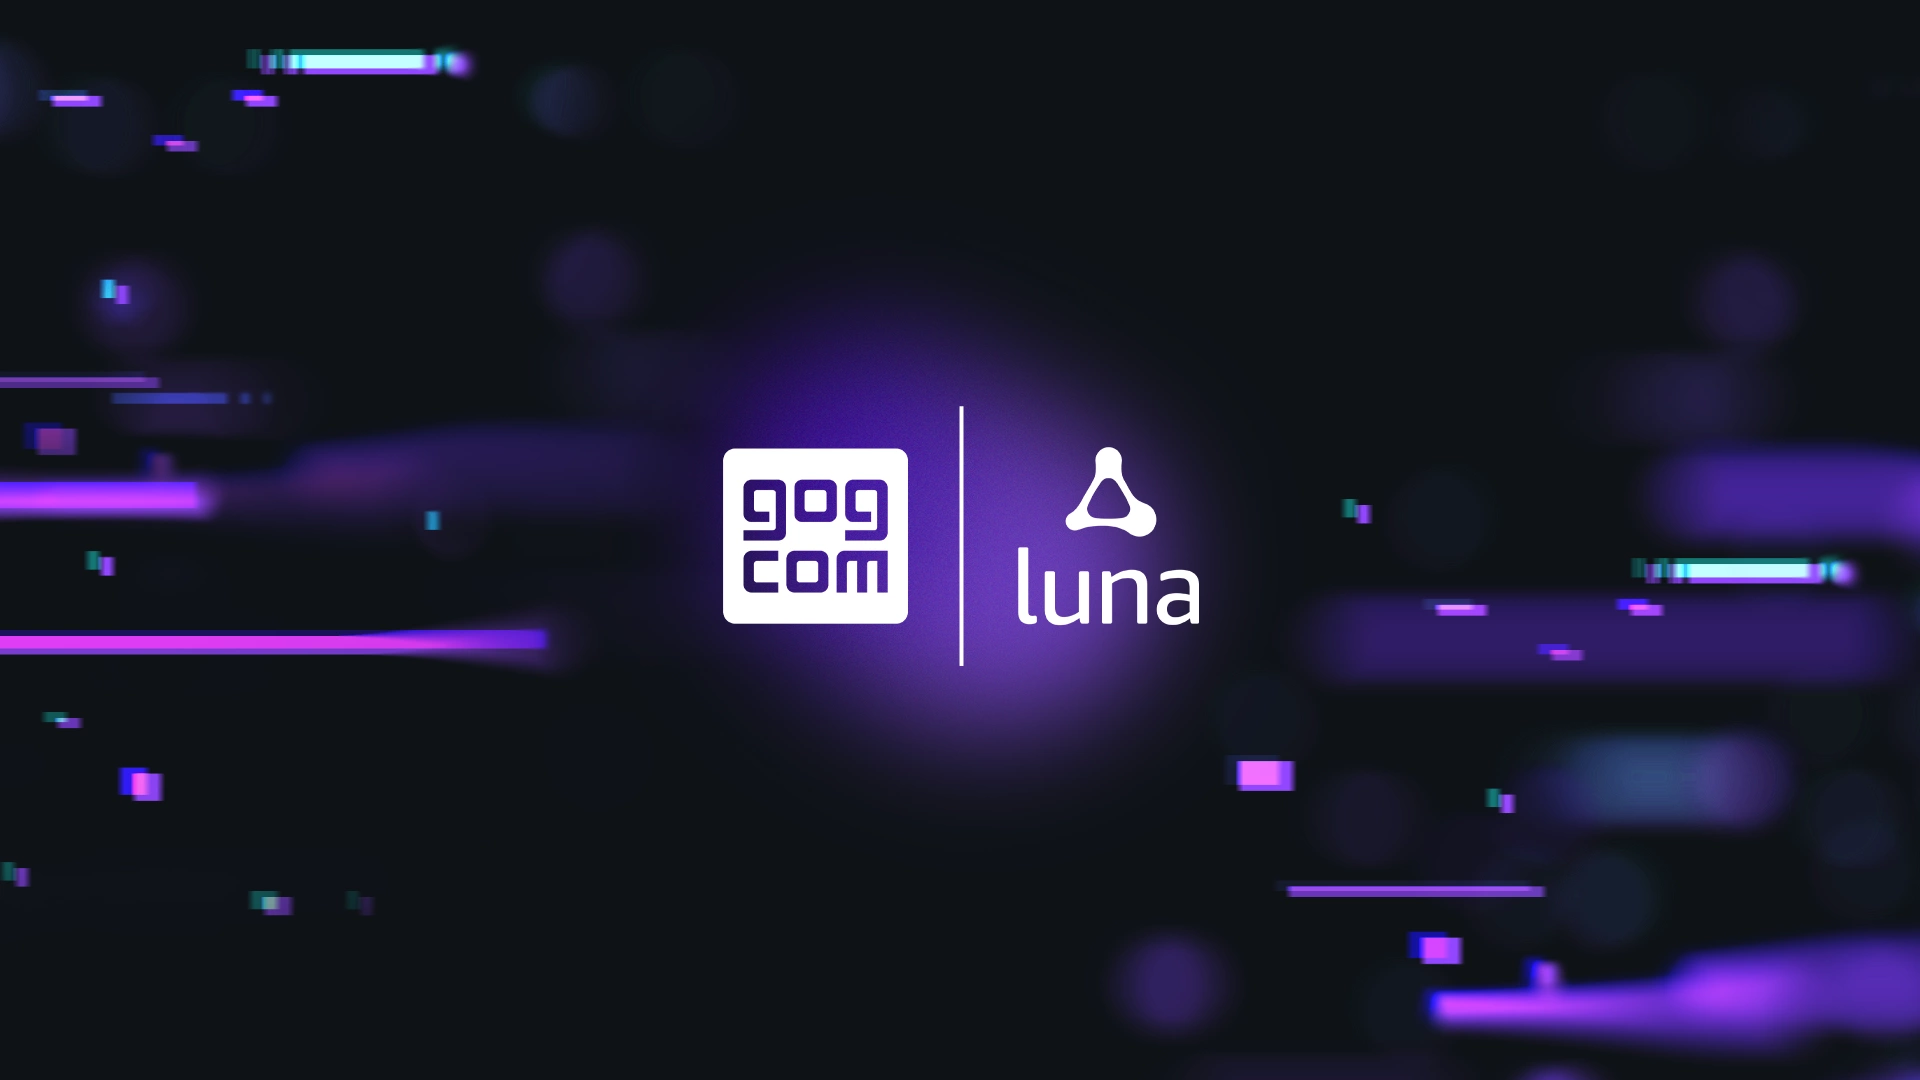 Gog Luna Logos